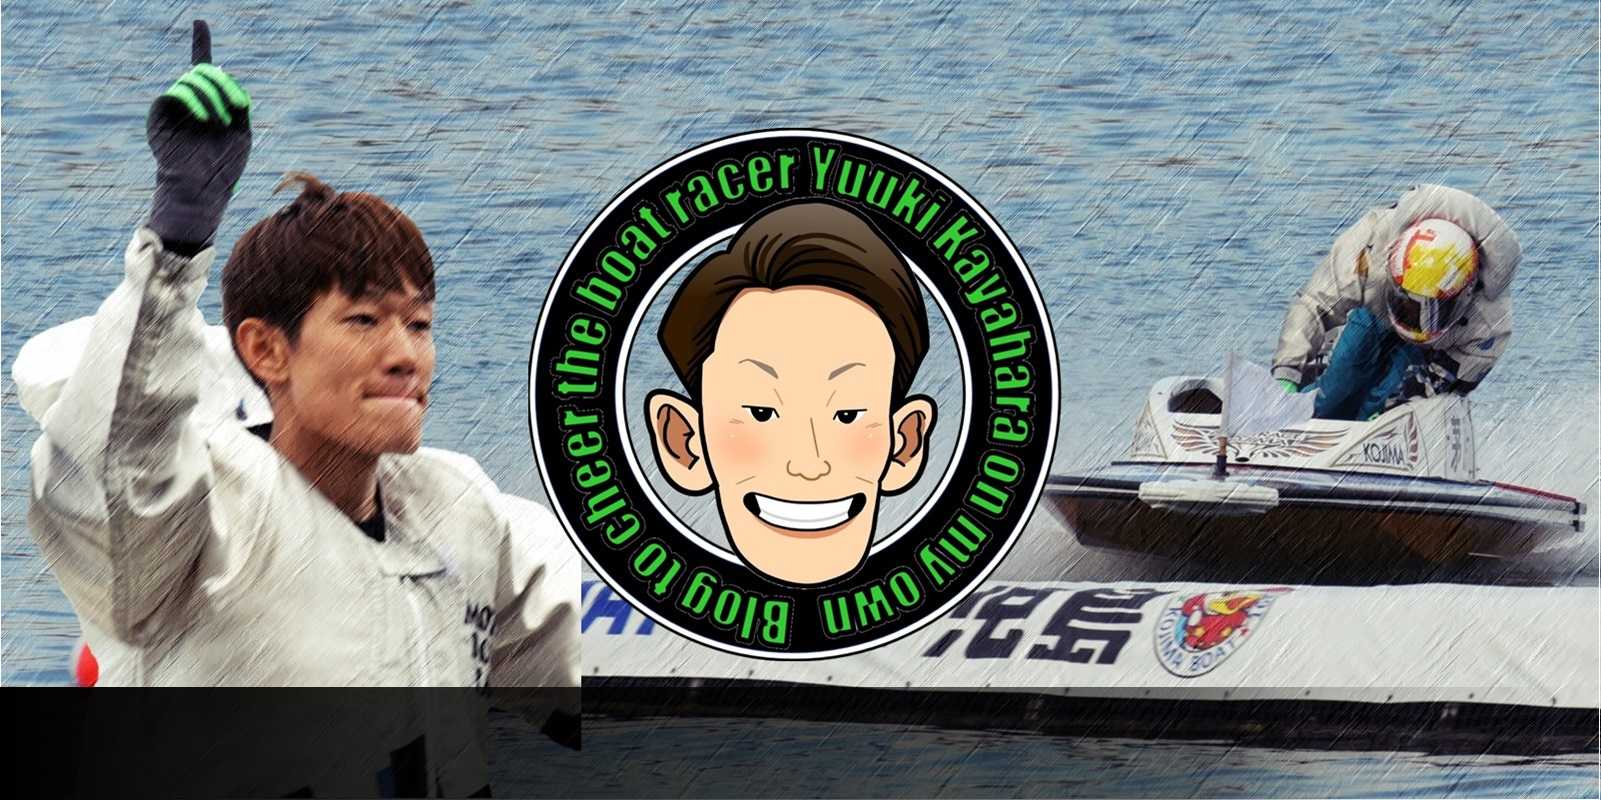 ボートレーサー茅原悠紀選手を勝手に応援するブログ